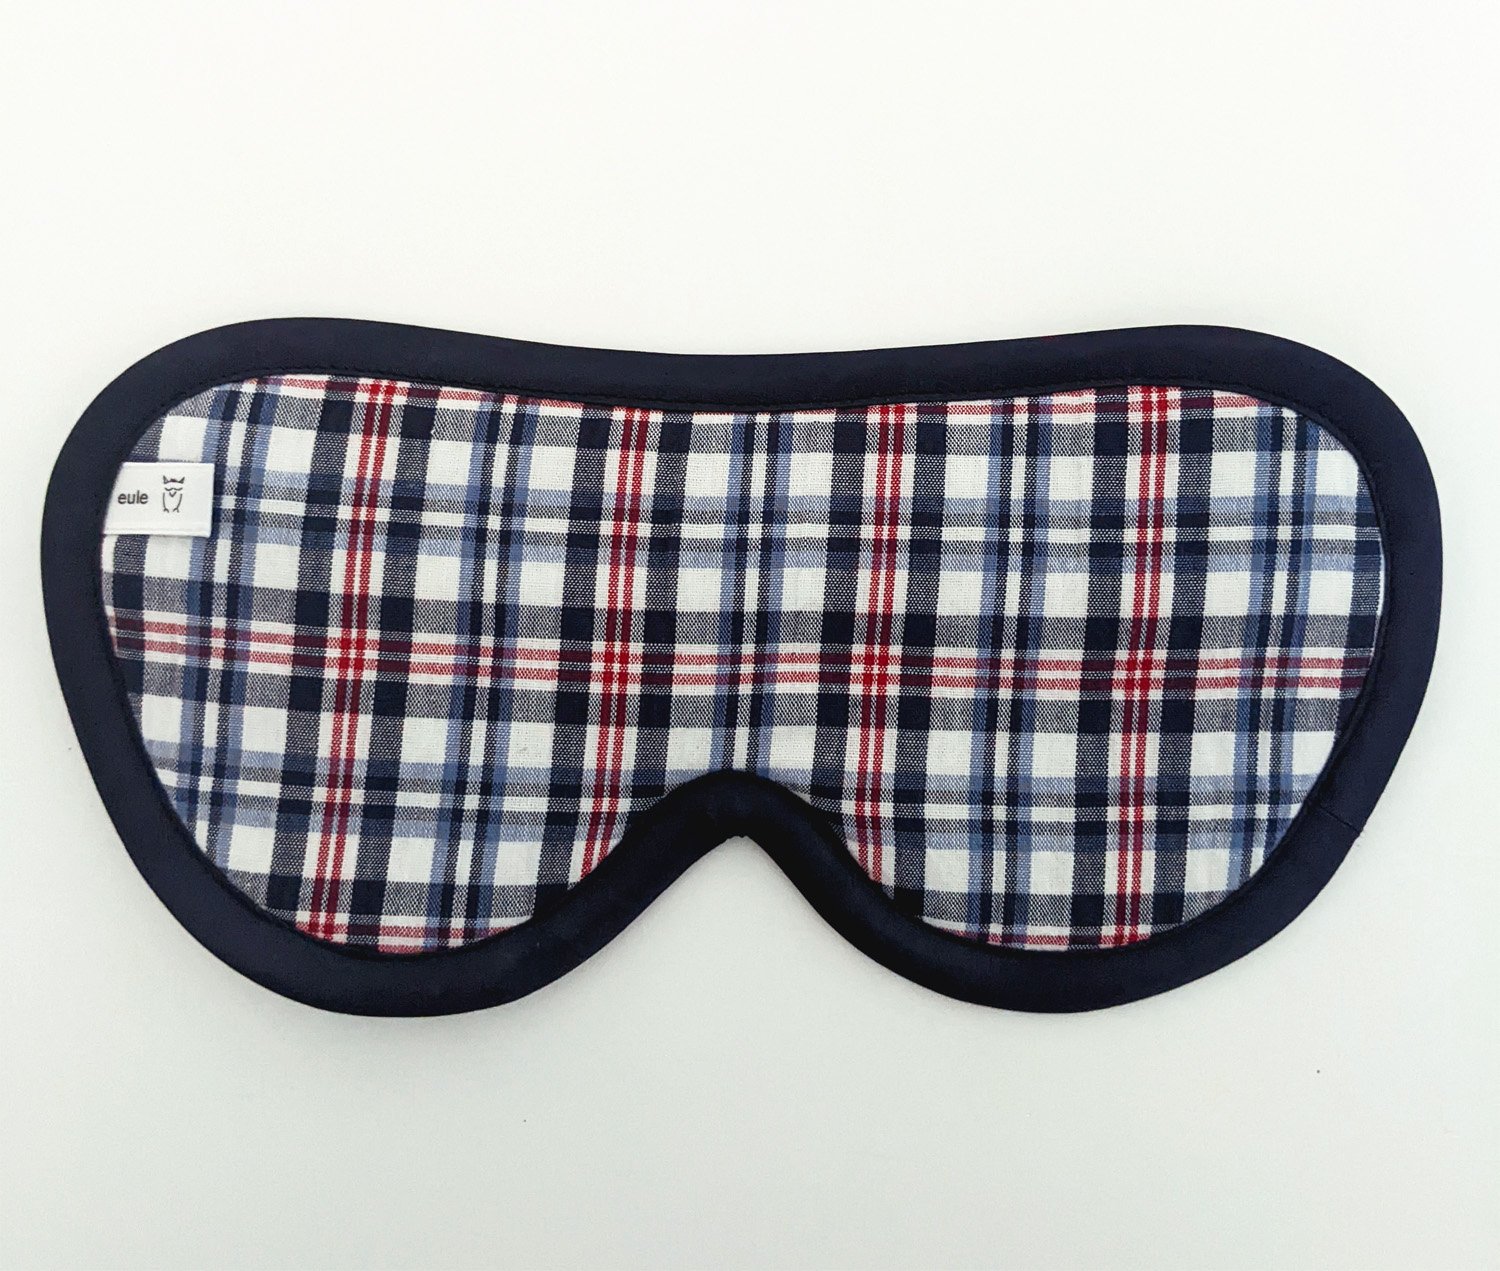 schlafbrille für männer blau-weiss-rot-kariert